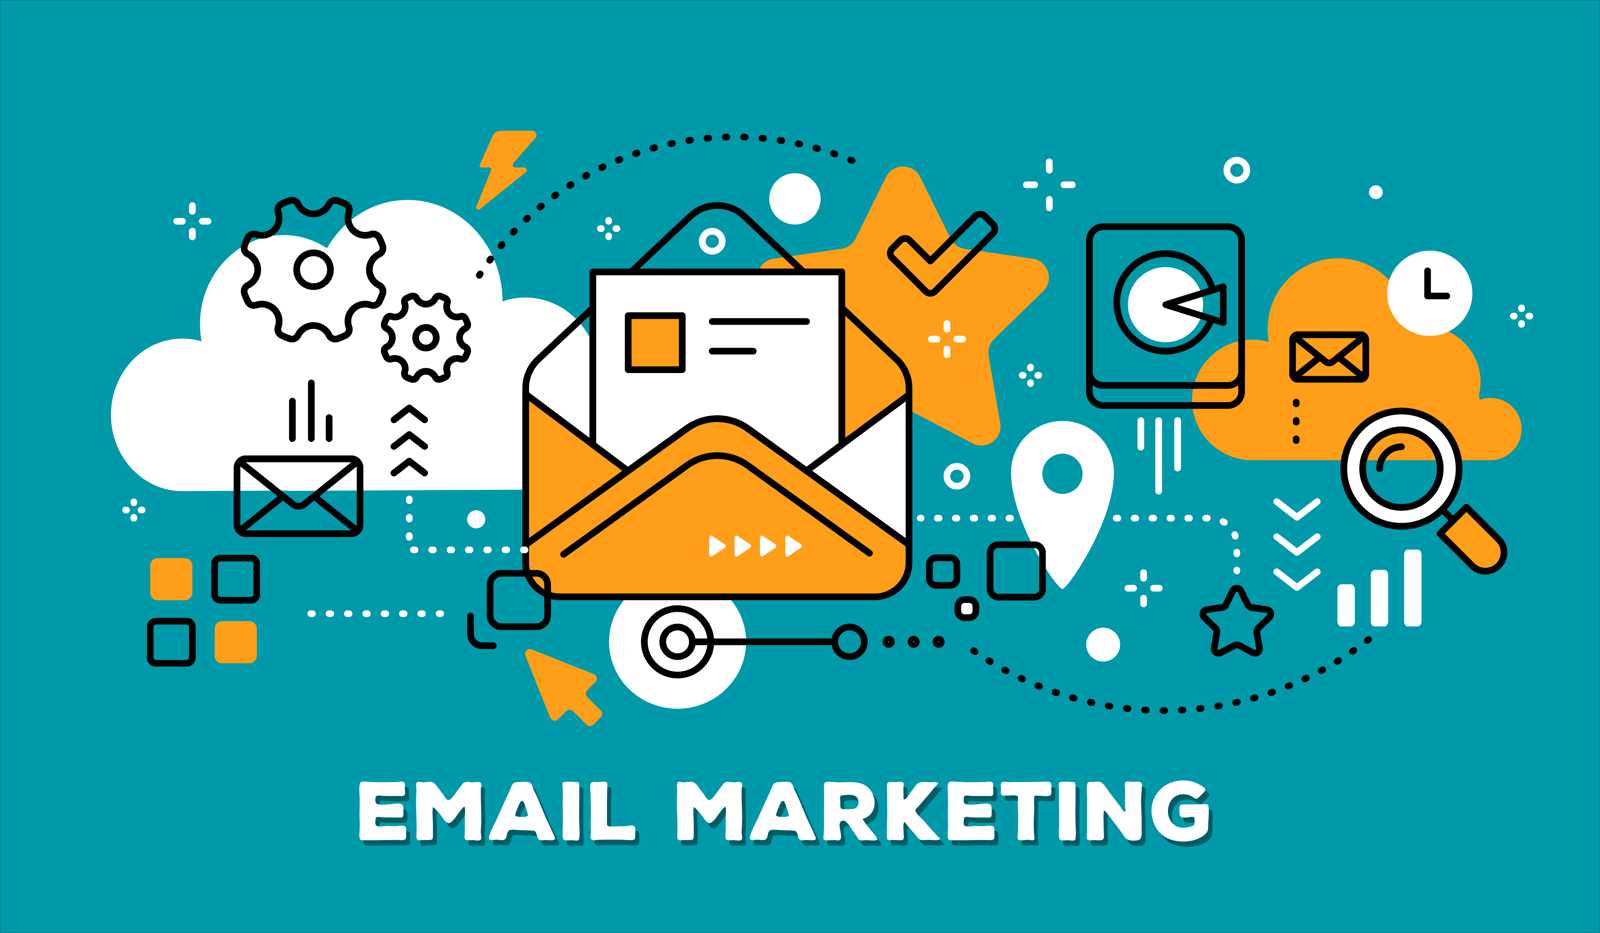 Email Marketing pentru companiile mici (I): Cum sa creezi o lista de abonati?